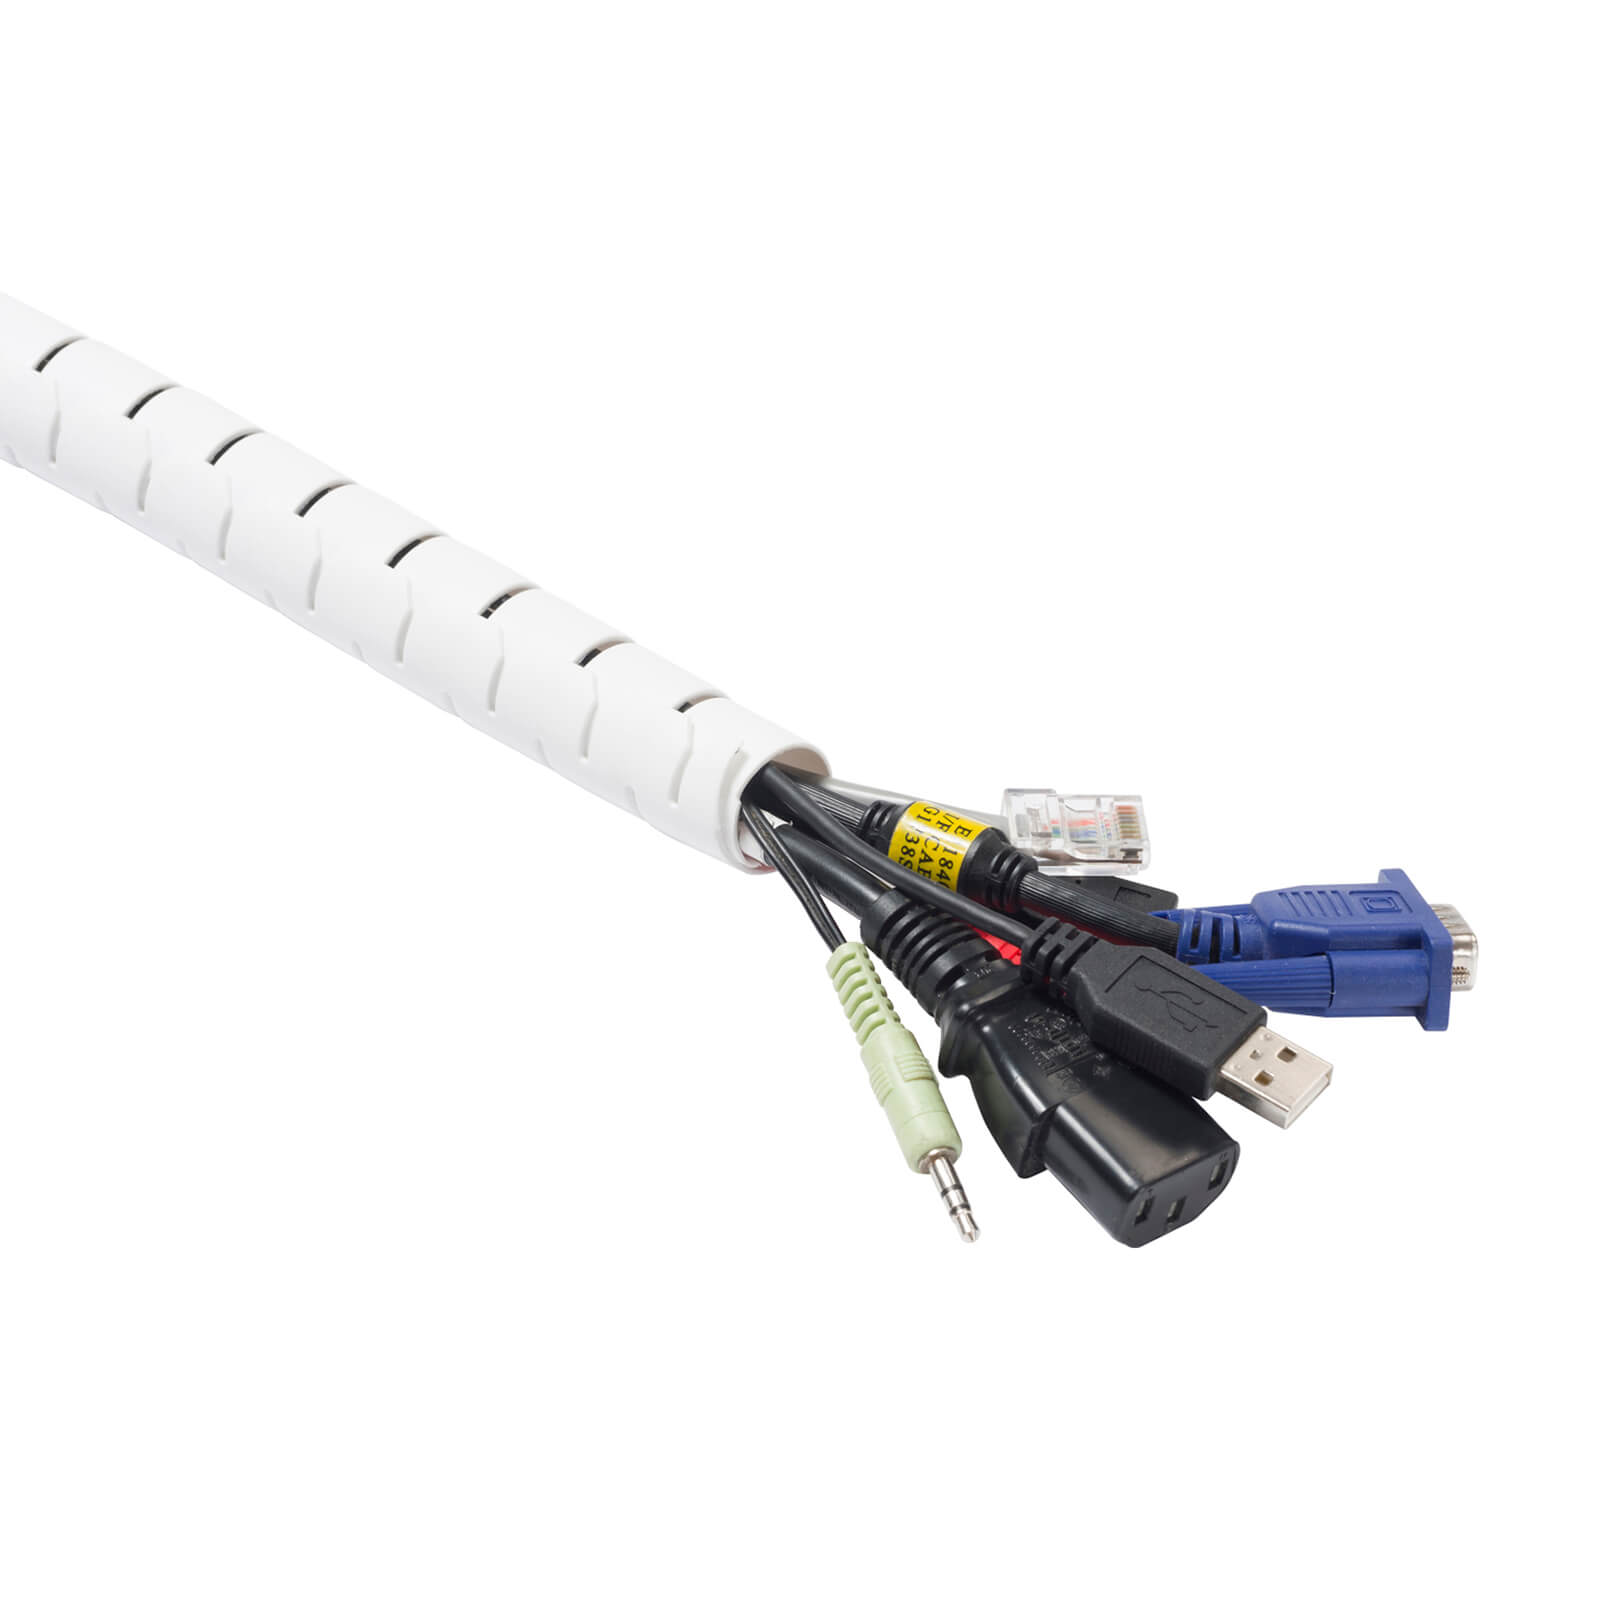 D-Line Cable Zipper - 2.5m Length 25mm diameter, White